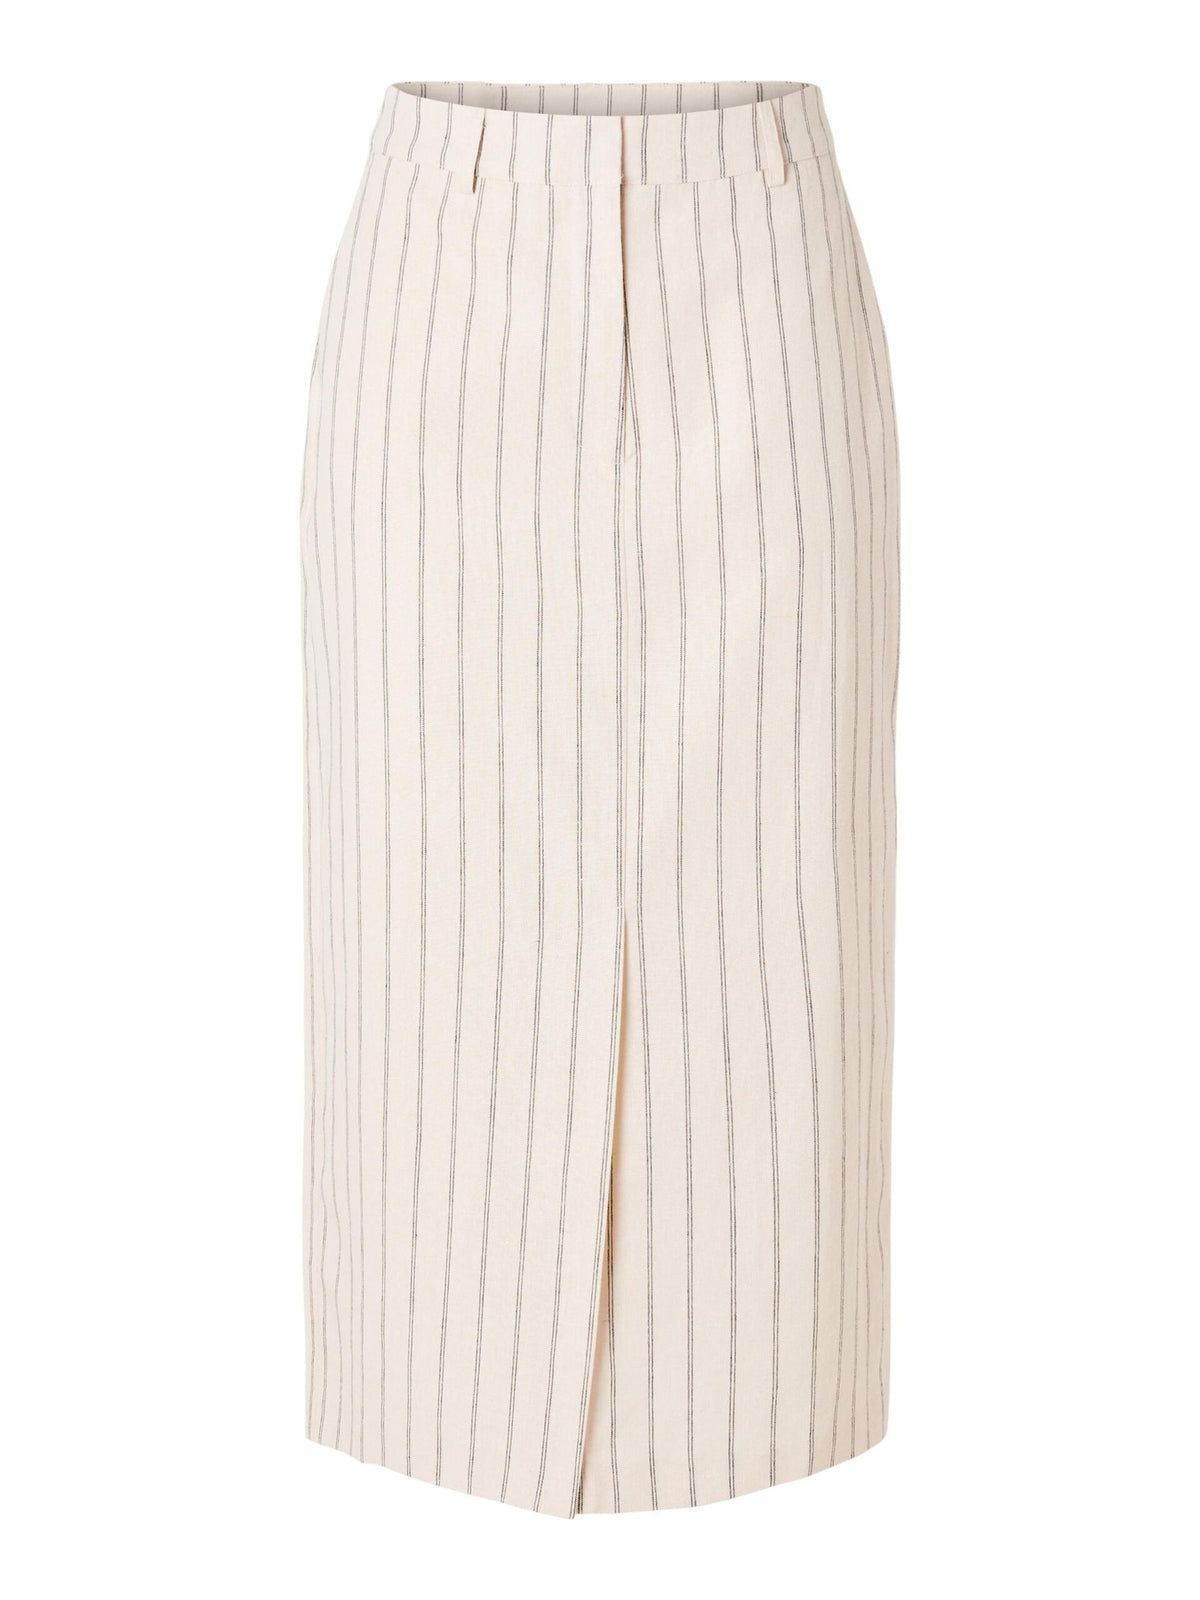 SLF Hilda Pencil Skirt in Pin Stripe Sandshell